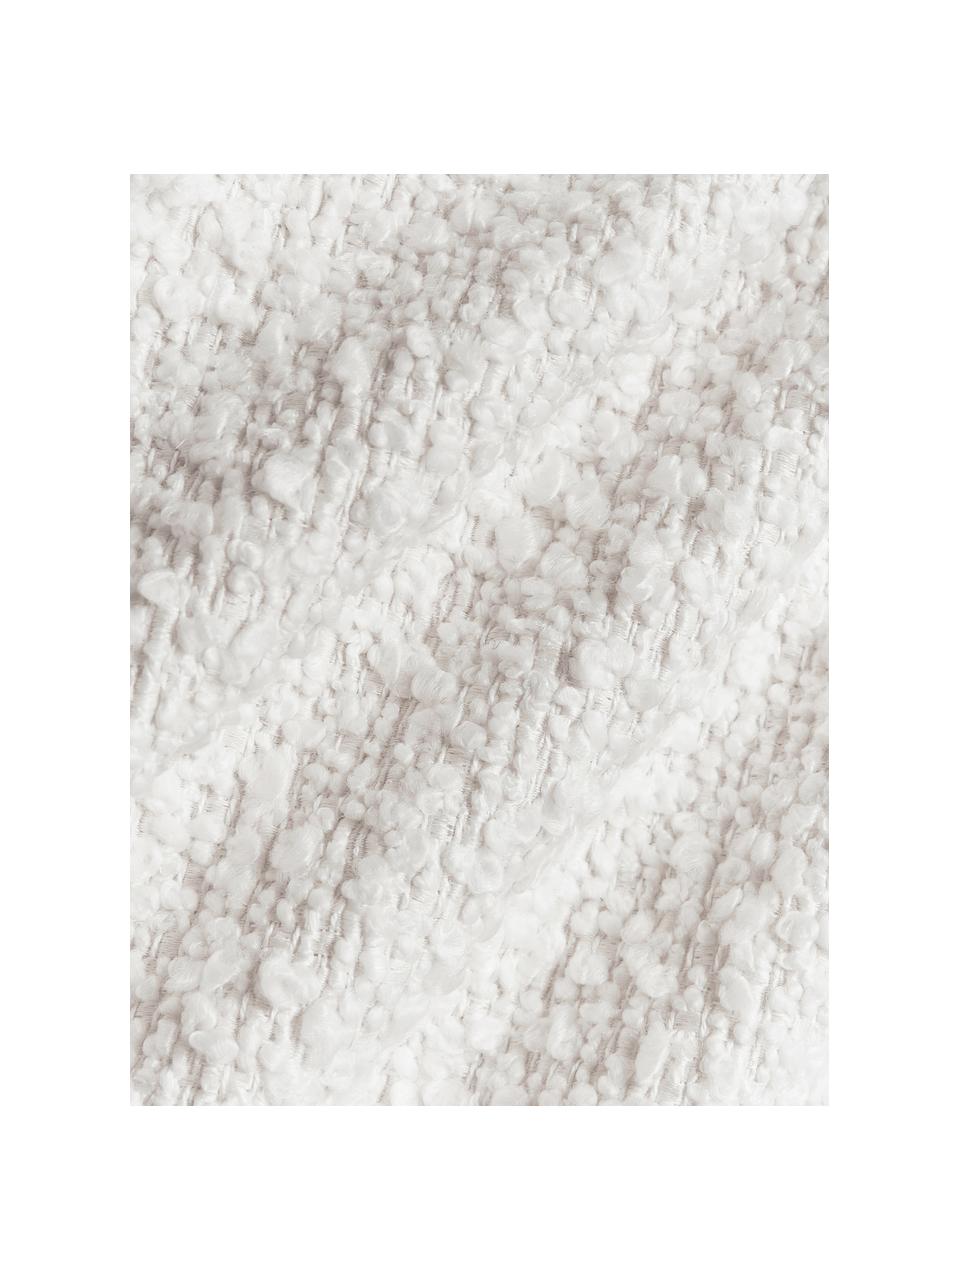 Housse de coussin 30x50 en tissu bouclé Bellamie, Tissu bouclé (95 % polyester, 5 % polyacrylique)

Le bouclé est un matériau qui se caractérise par sa structure incurvée irrégulière. La surface caractéristique est créée par des boucles tissées de fils de différents types, qui confèrent au tissu une structure unique. La structure bouclée a un effet à la fois isolant et moelleux, ce qui rend le tissu particulièrement douillet, Bouclé blanc, larg. 30 x long. 50 cm